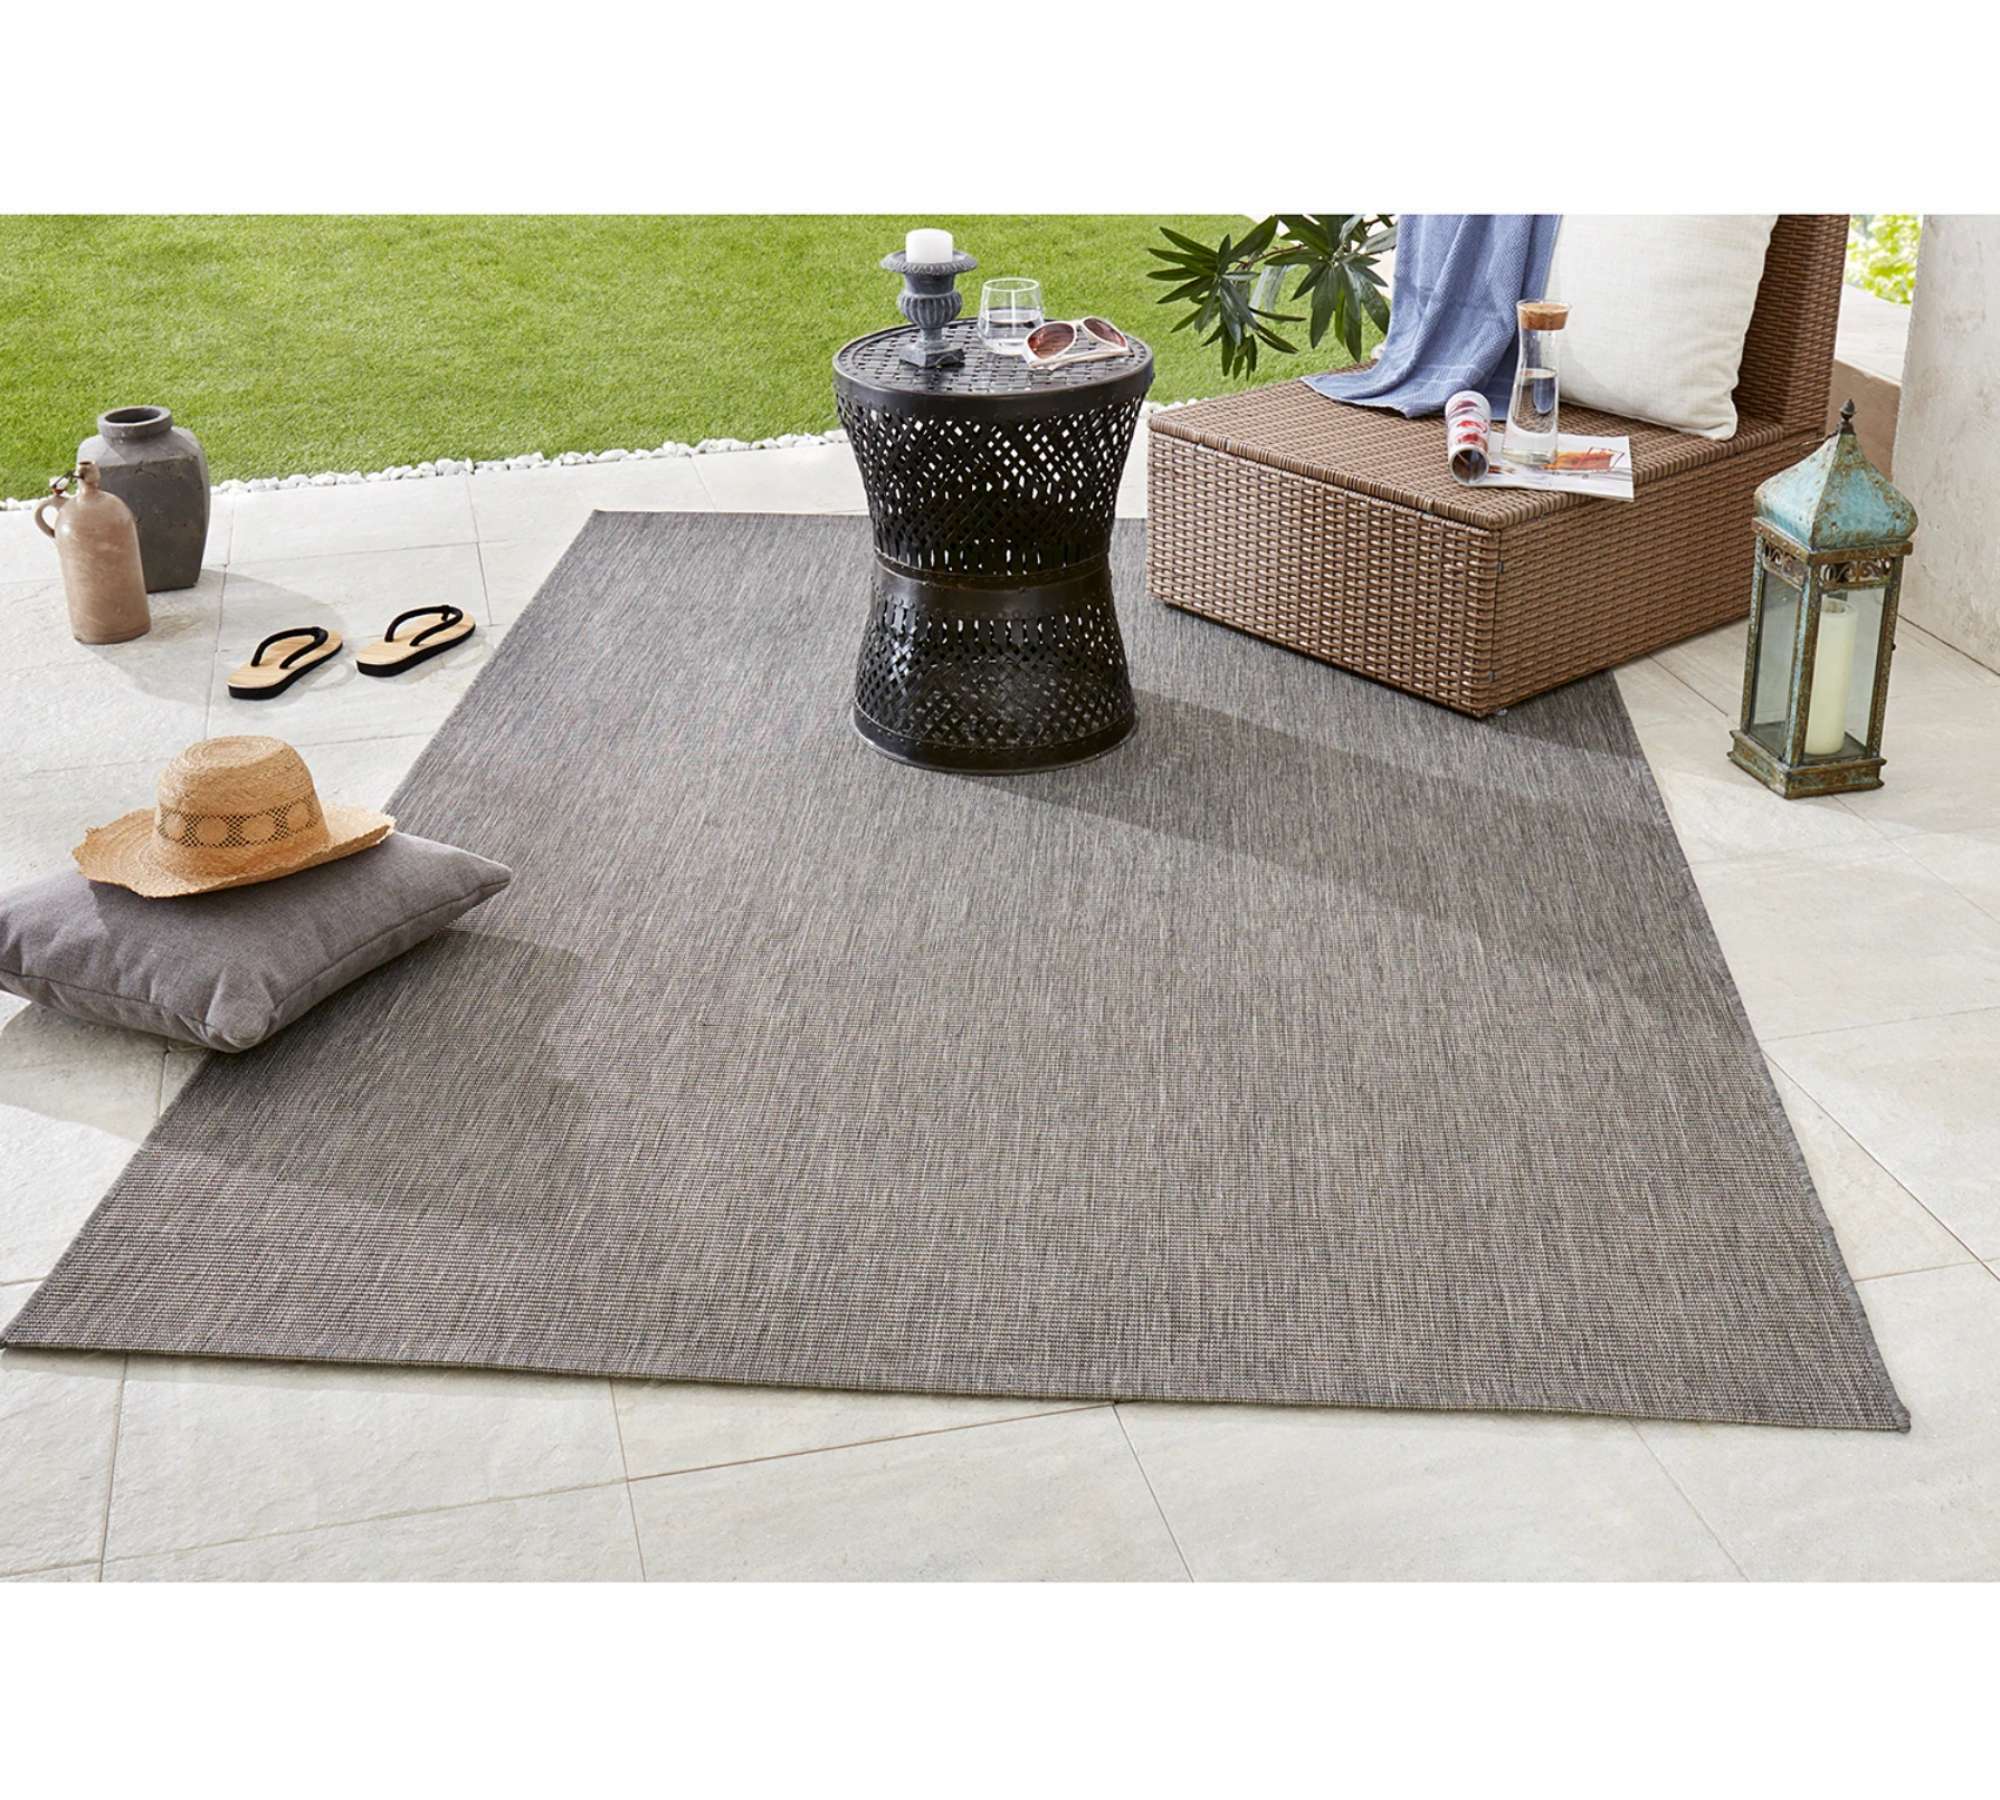 Outdoor-Teppich Kunstfaser Grau 80 cm x 150 cm 3